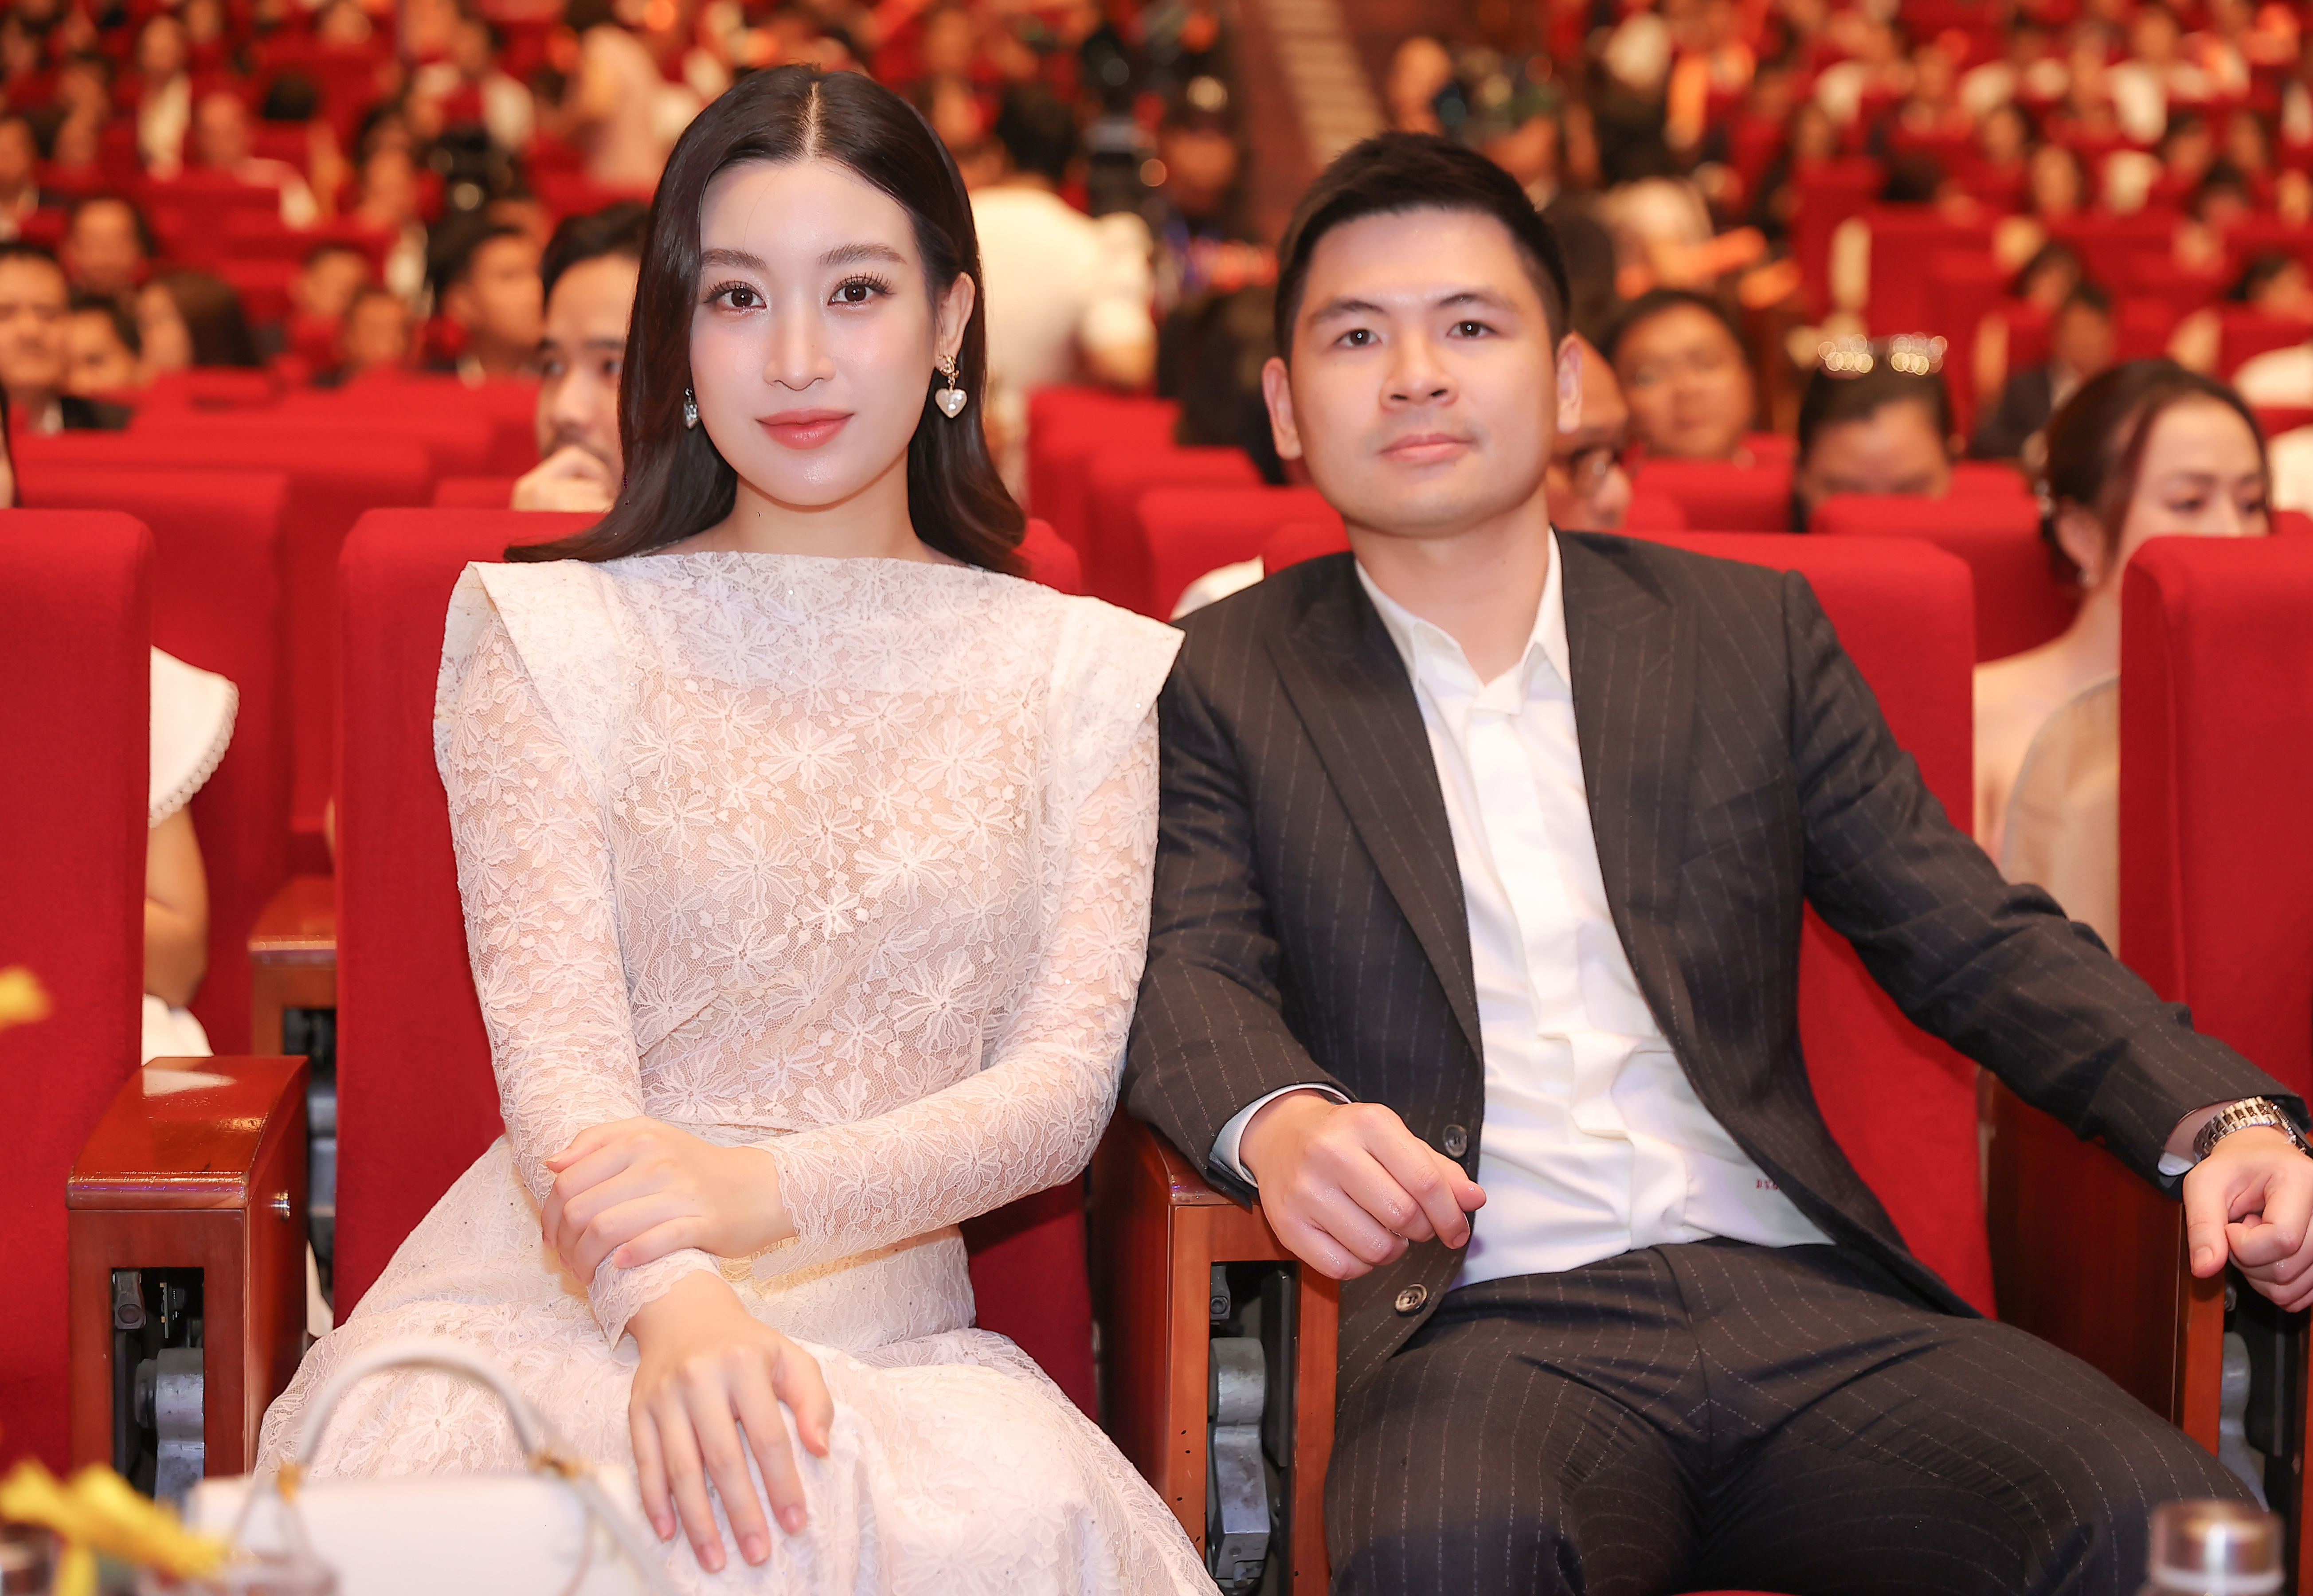 Hoa hậu Đỗ Mỹ Linh xuất hiện bên cạnh ông xã doanh nhân Đỗ Vinh Quang. Ảnh: Nhân vật cung cấp